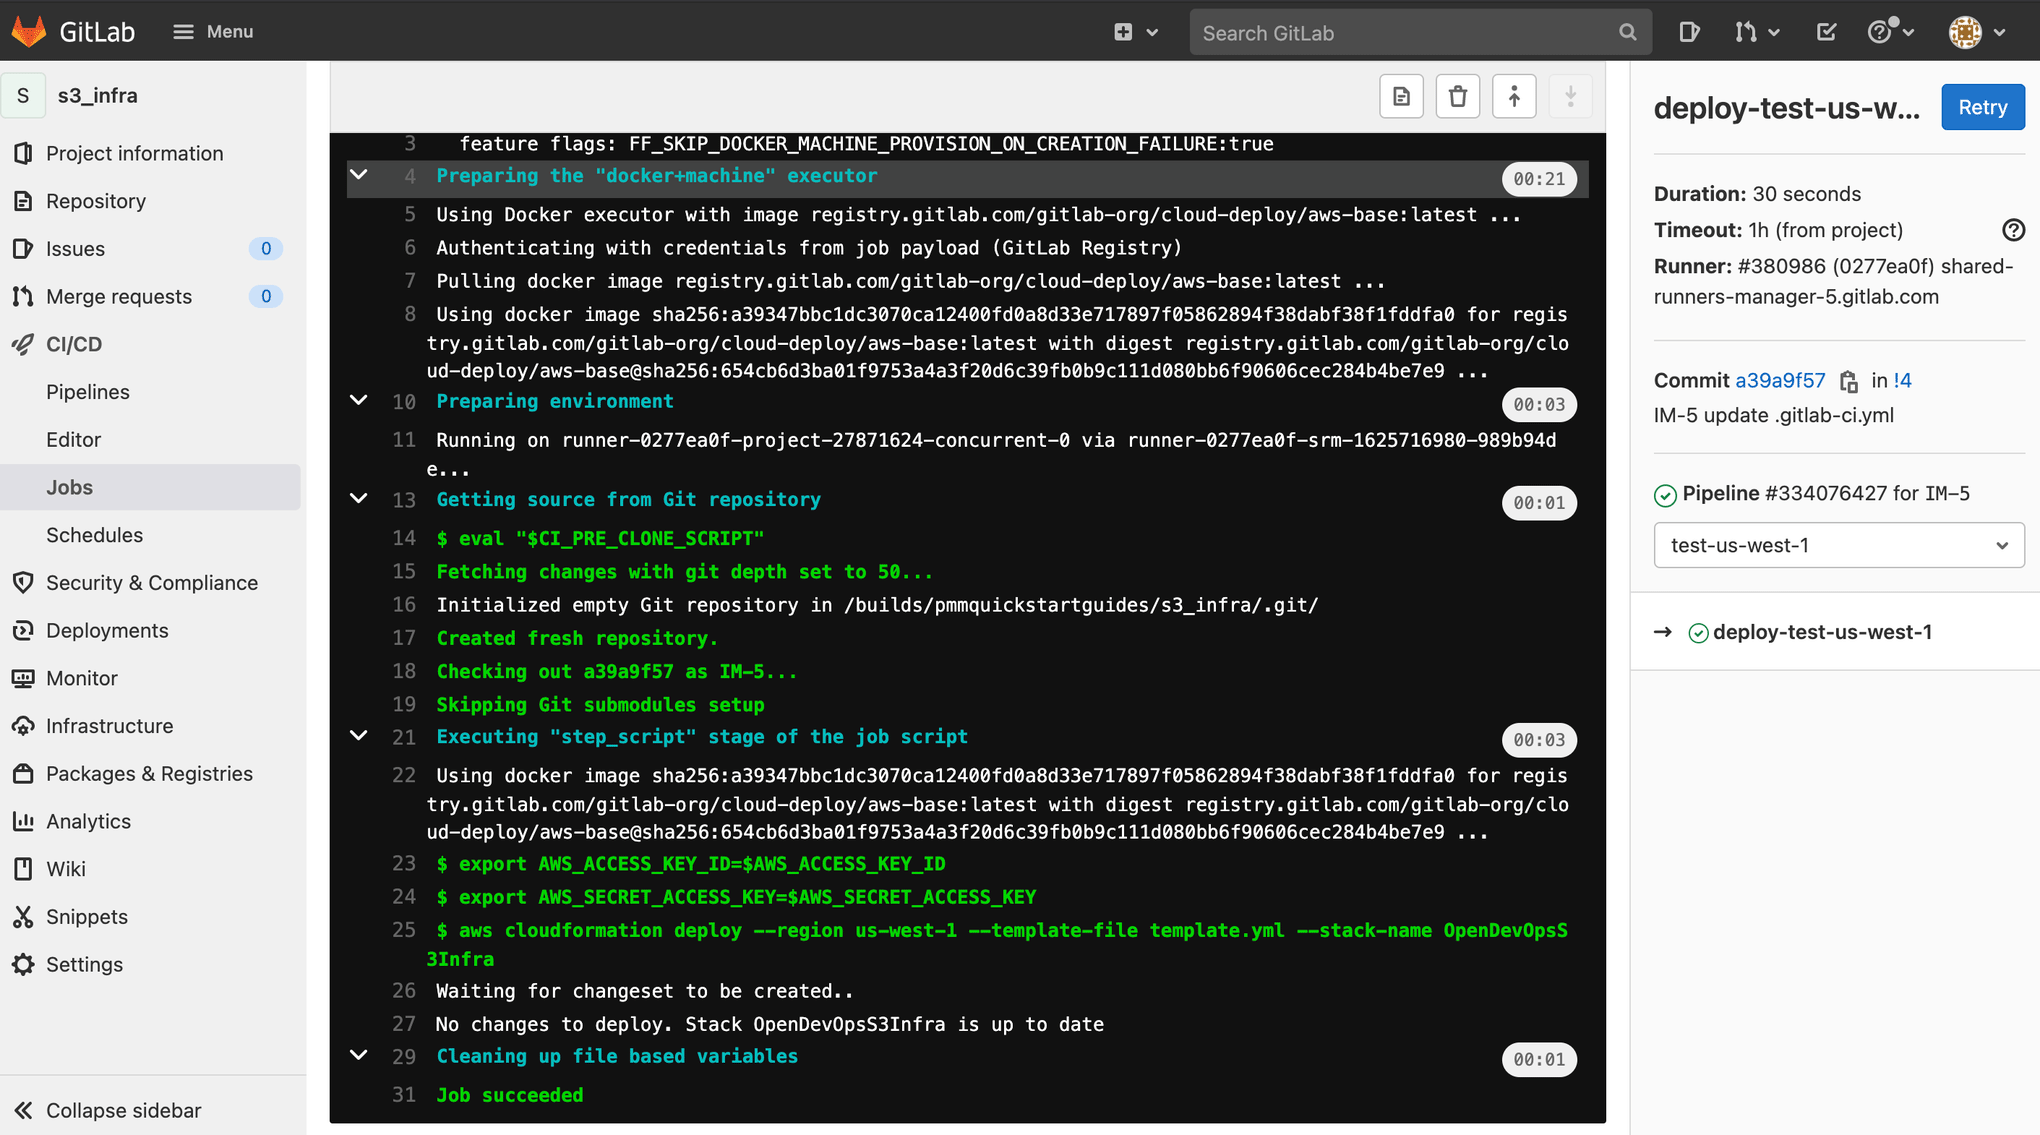 Detailed job screen for running pipeline in GitLab